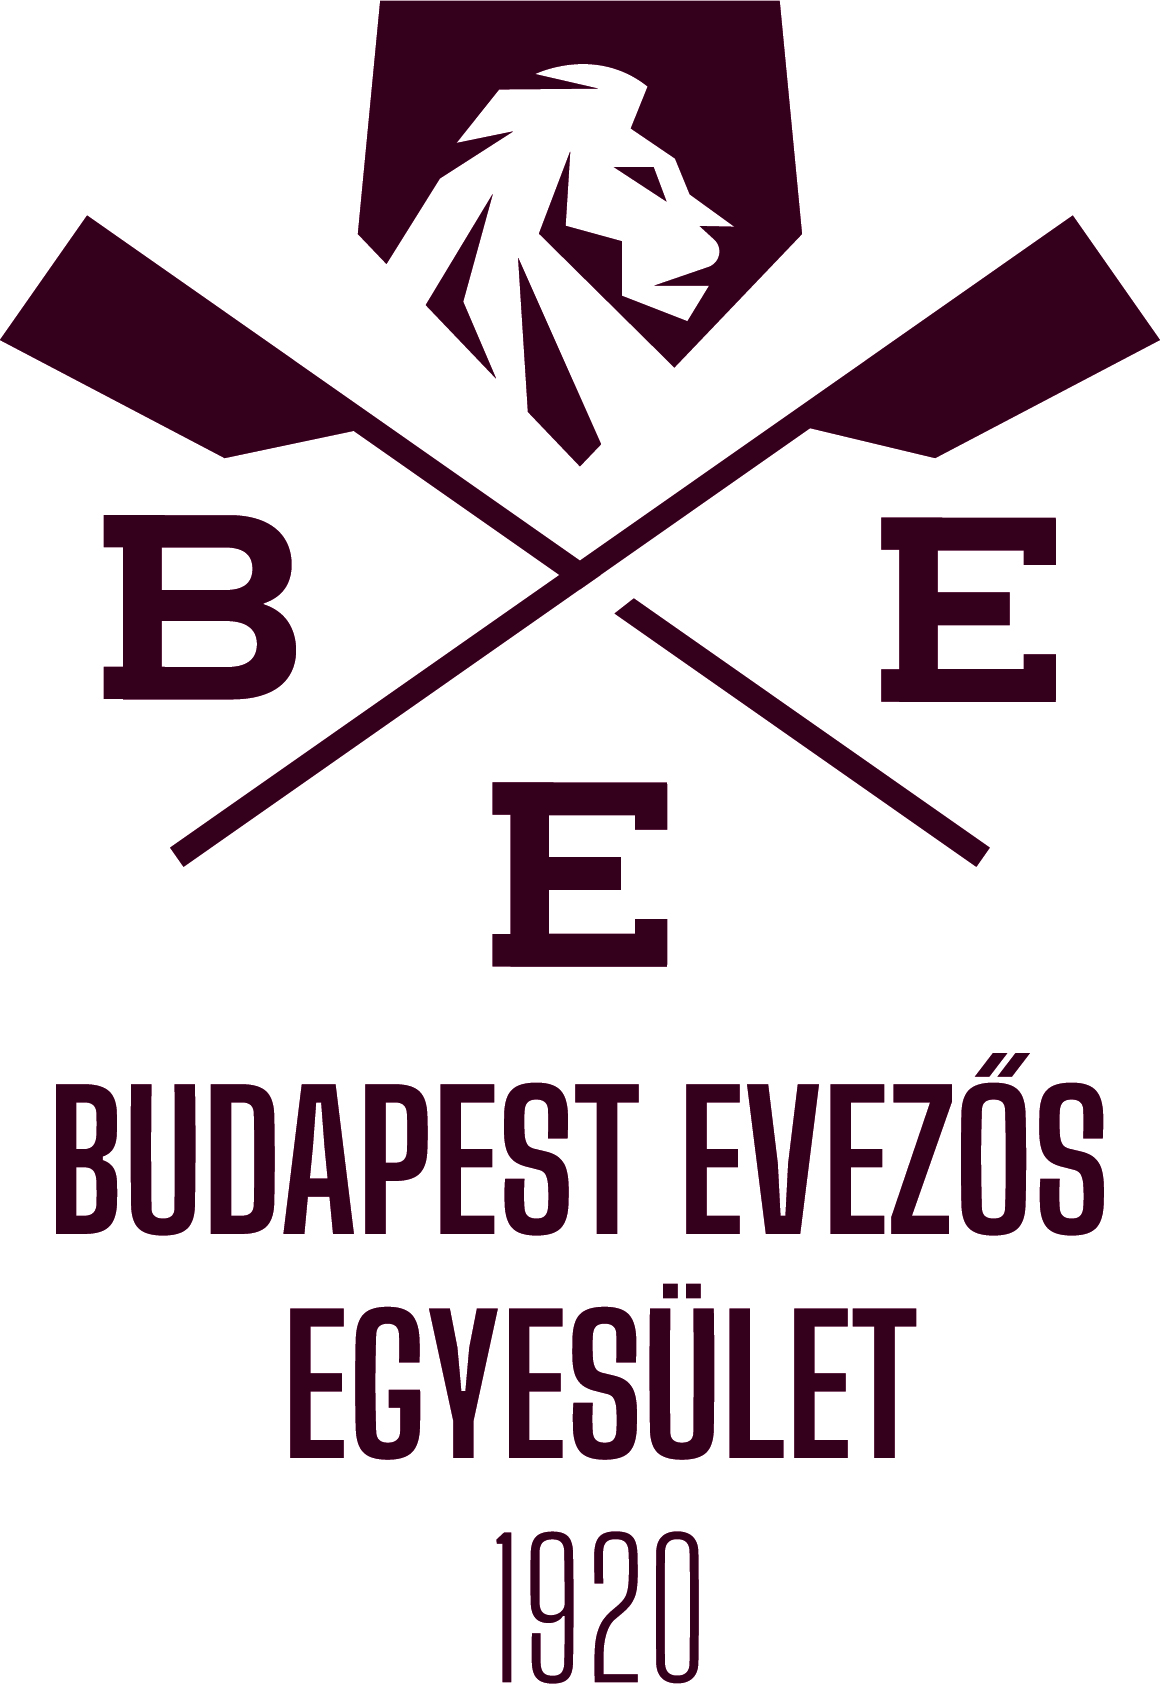 Budapest Evezős Egyesület